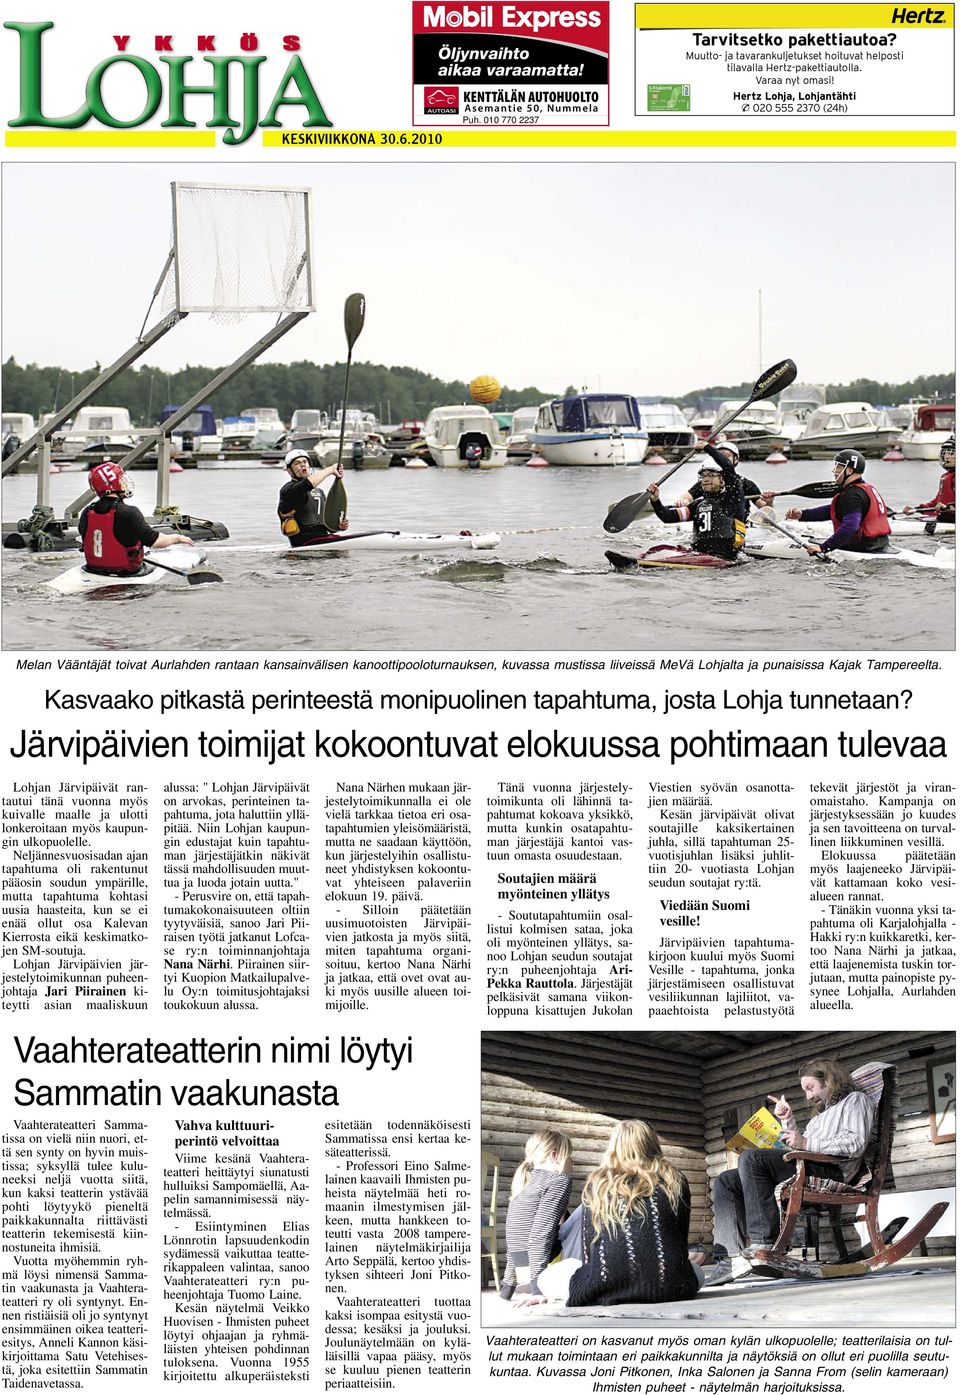 Hertz Lohja, Lohjantähti 020 555 2370 (24h) Melan Vääntäjät toivat Aurlahden rantaan kansainvälisen kanoottipooloturnauksen, kuvassa mustissa liiveissä MeVä Lohjalta ja punaisissa Kajak Tampereelta.